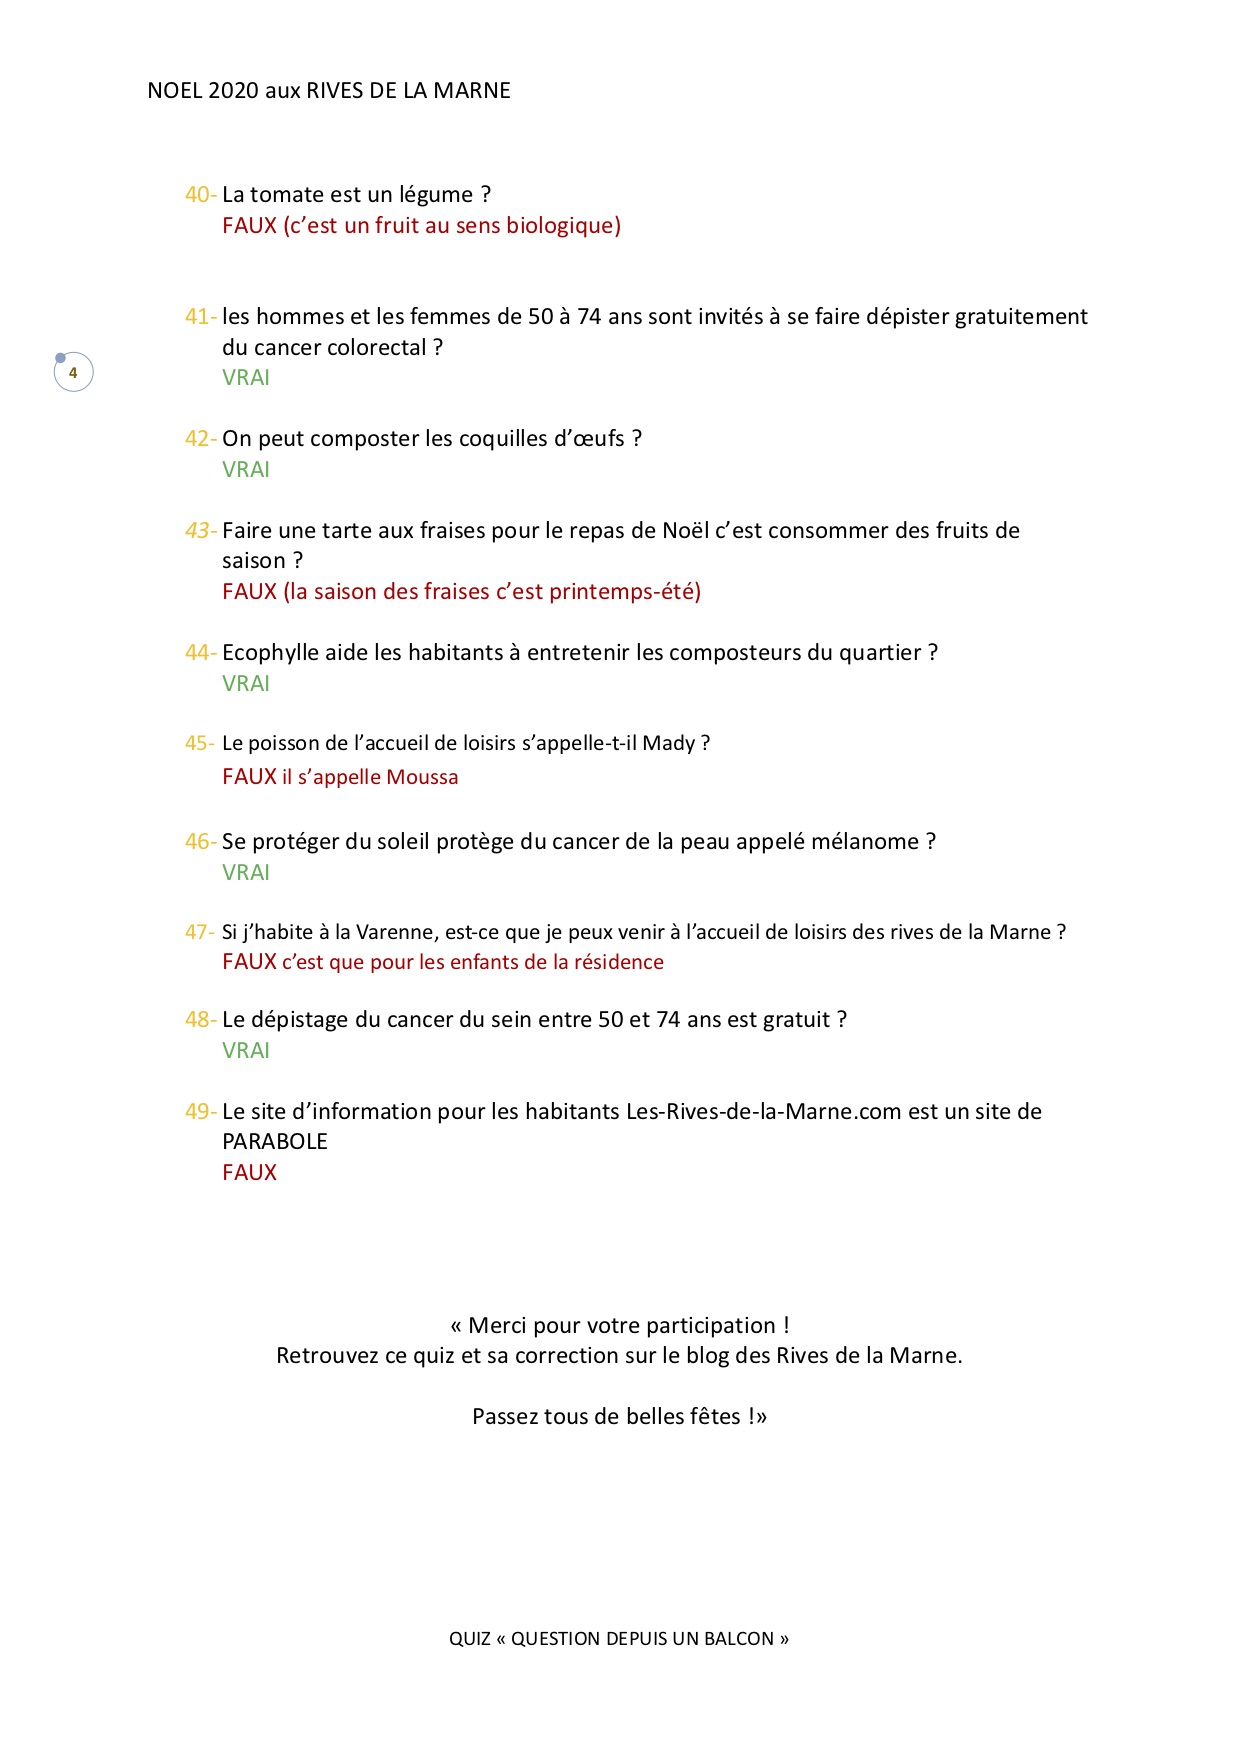 QUIZ QUESTION POUR UN BALCON_questions mélangées Page 4